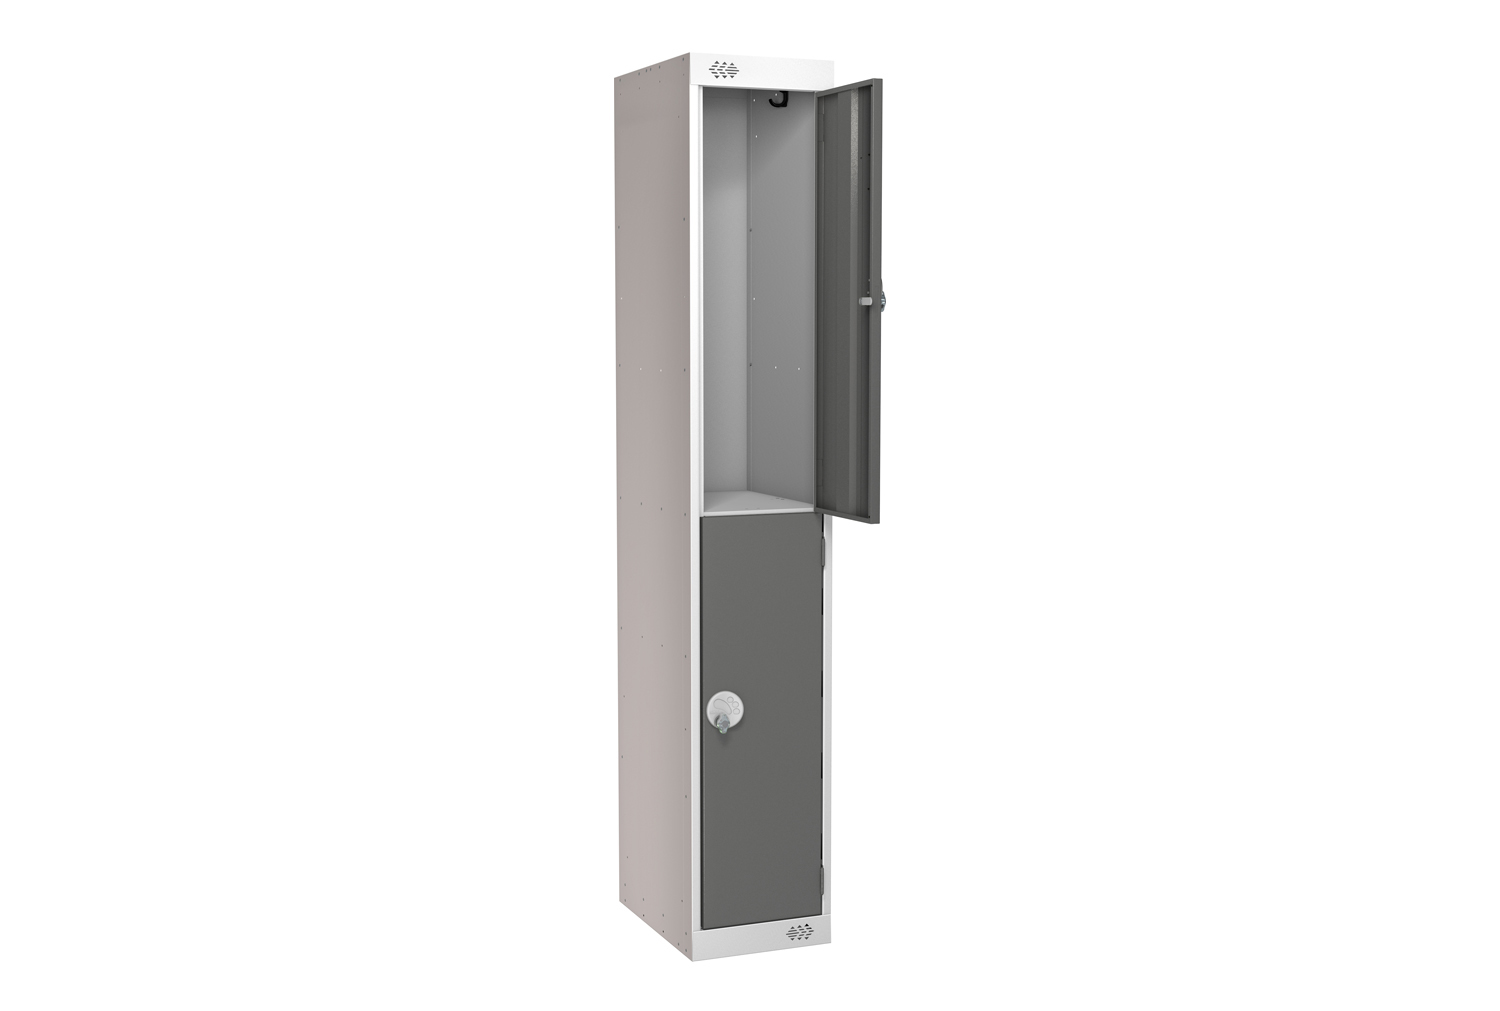 Deluxe 2 Door Locker, 30wx45dx180h (cm), Hasp Lock, Dark Grey